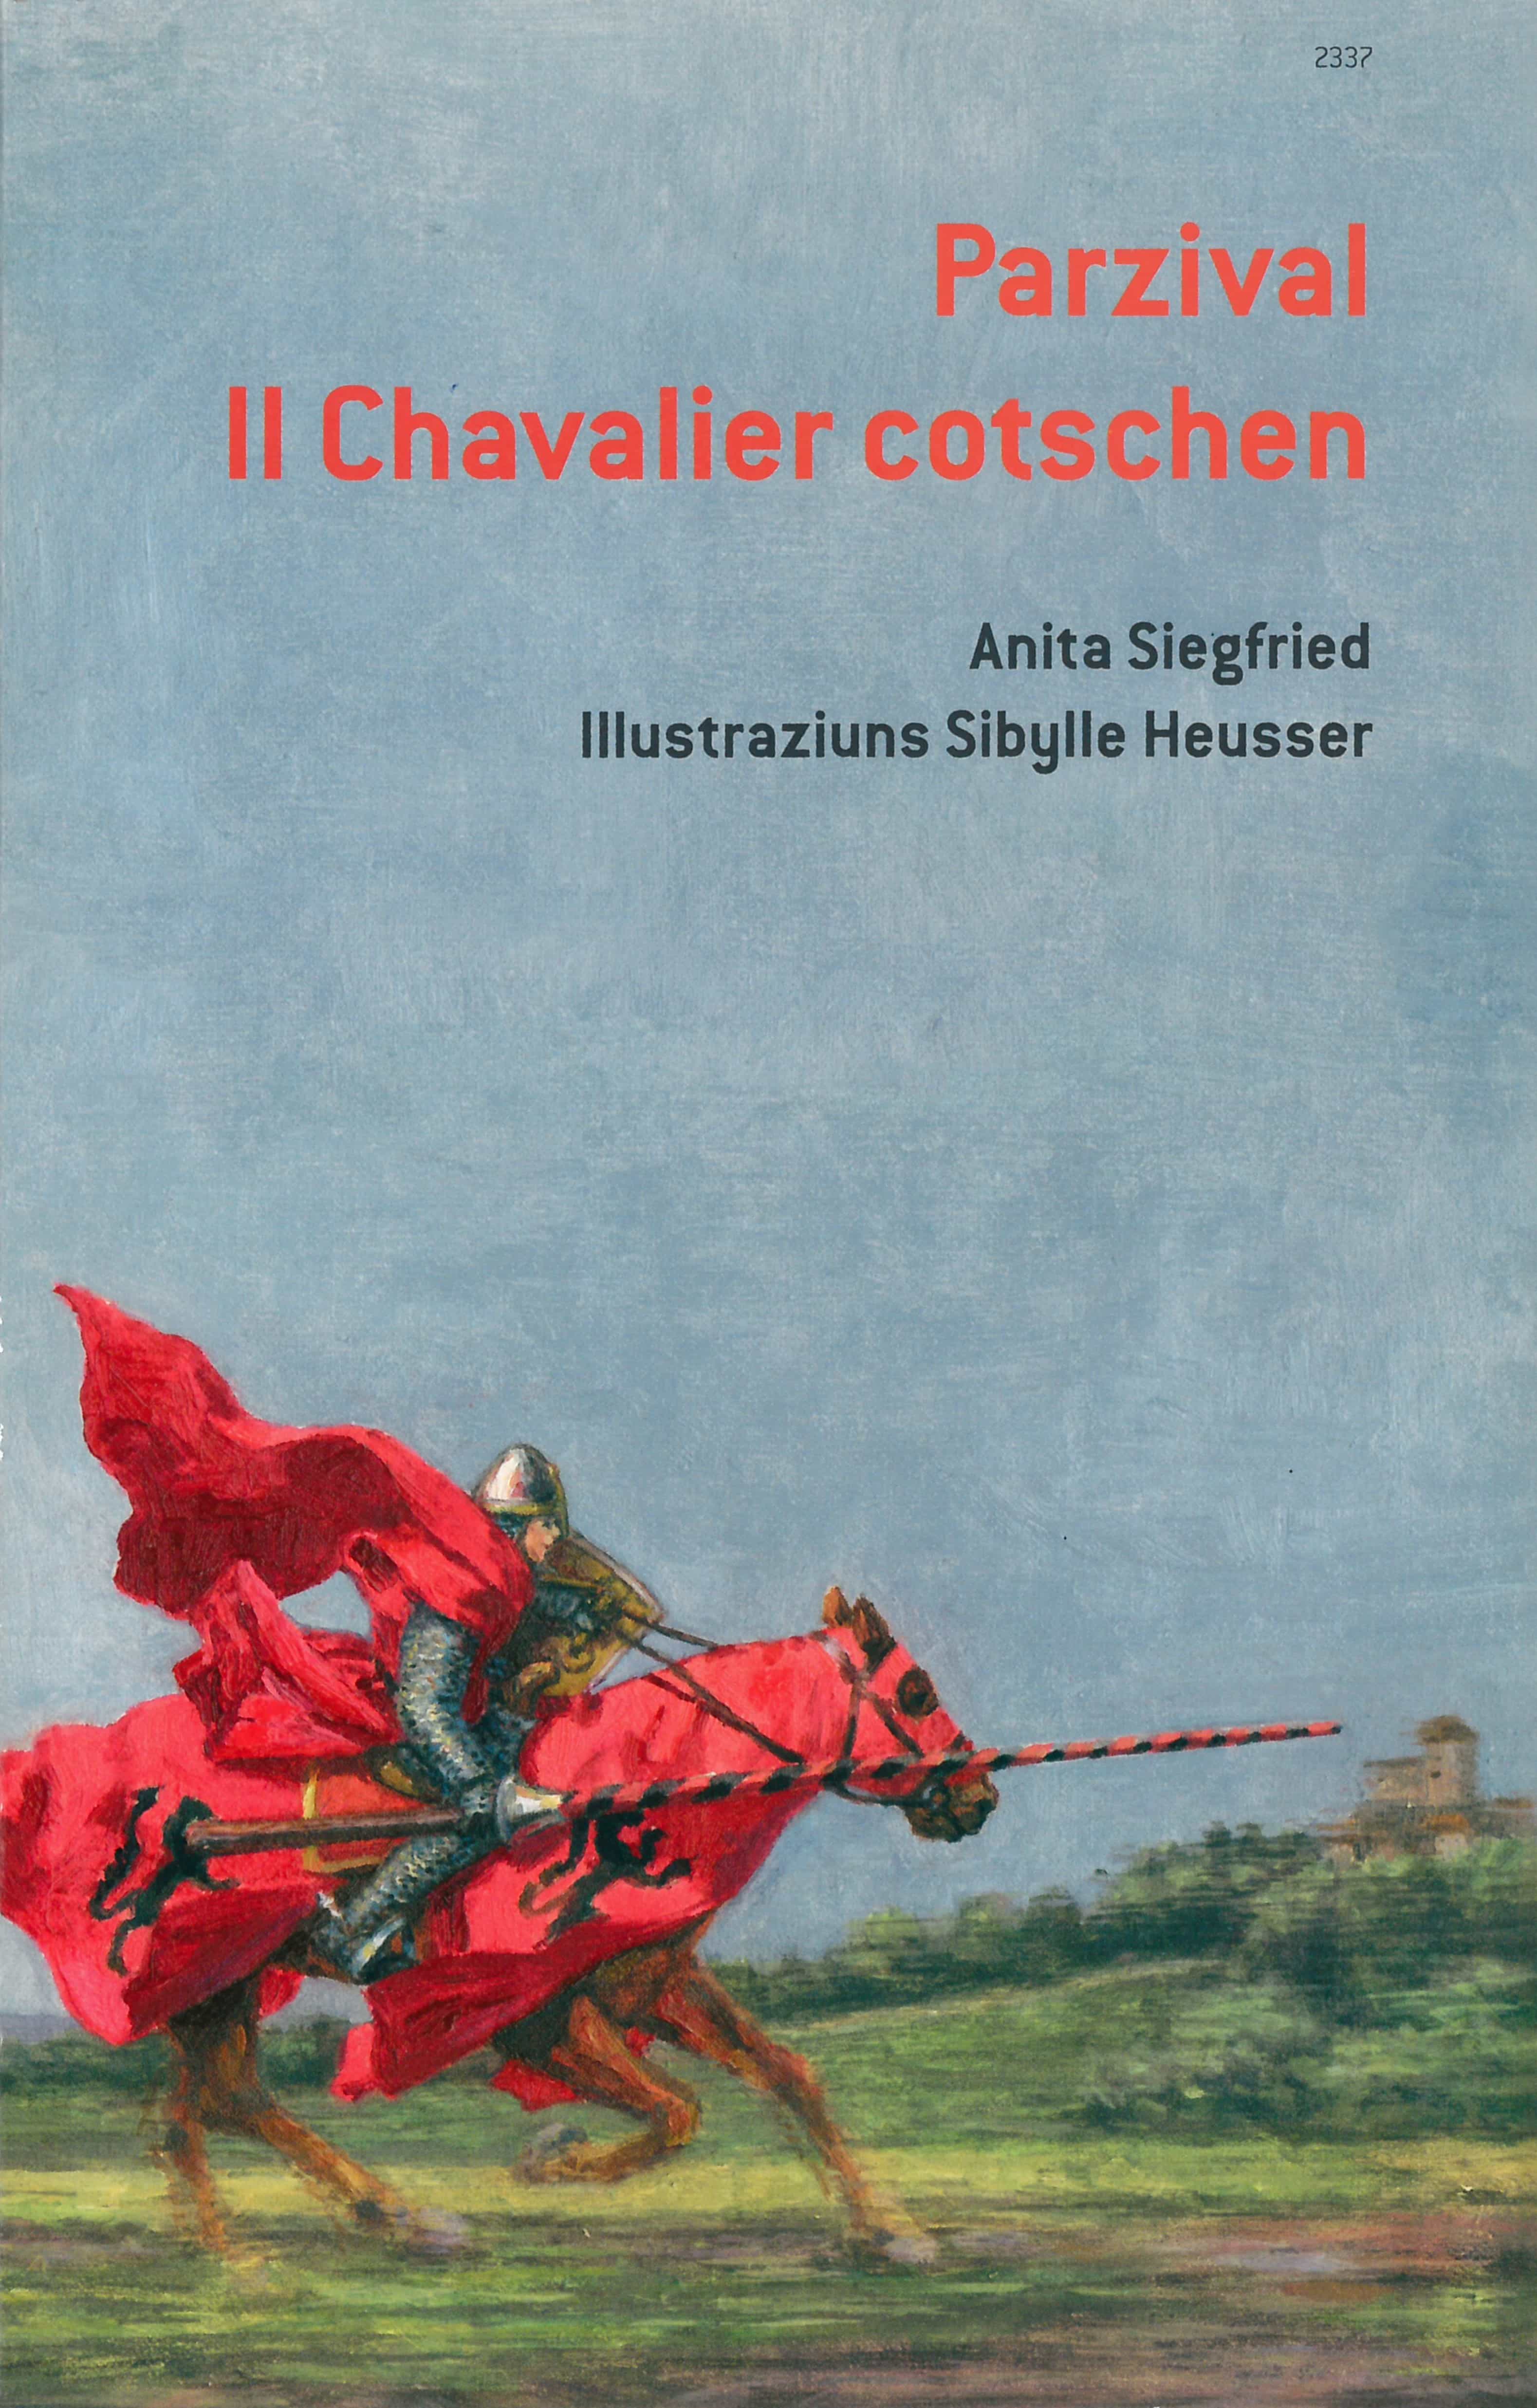 Parzival. Il Chavalier cotschen, ein Buch von Anita Siegfried, Illustration von Sibylle Heusser, SJW Verlag, Sagen & Fabeln